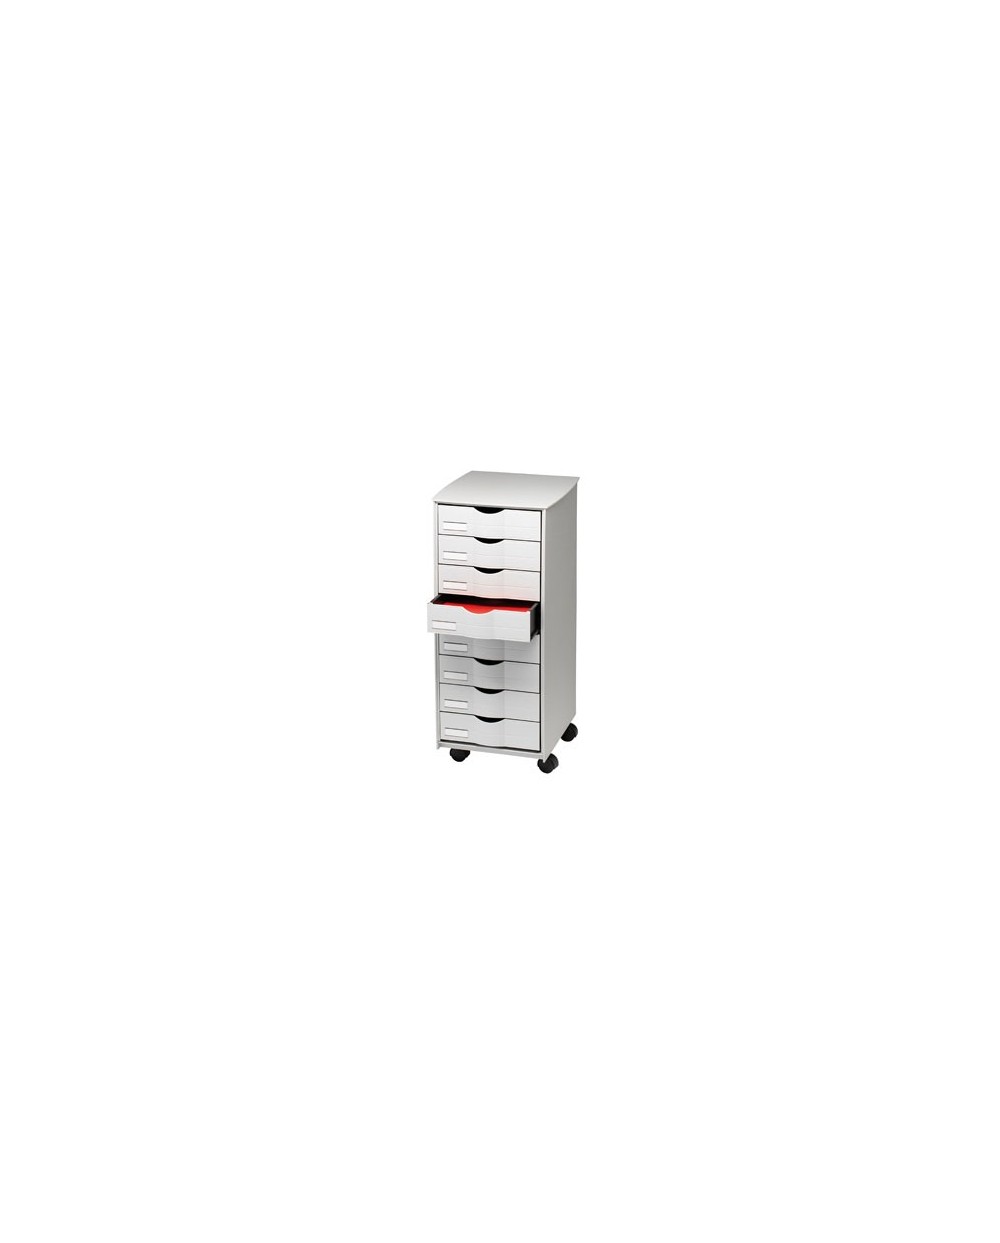 Mueble auxiliar fast paperflow para oficina 8 cajones en color gris 5x825x382 715x316x343 cm